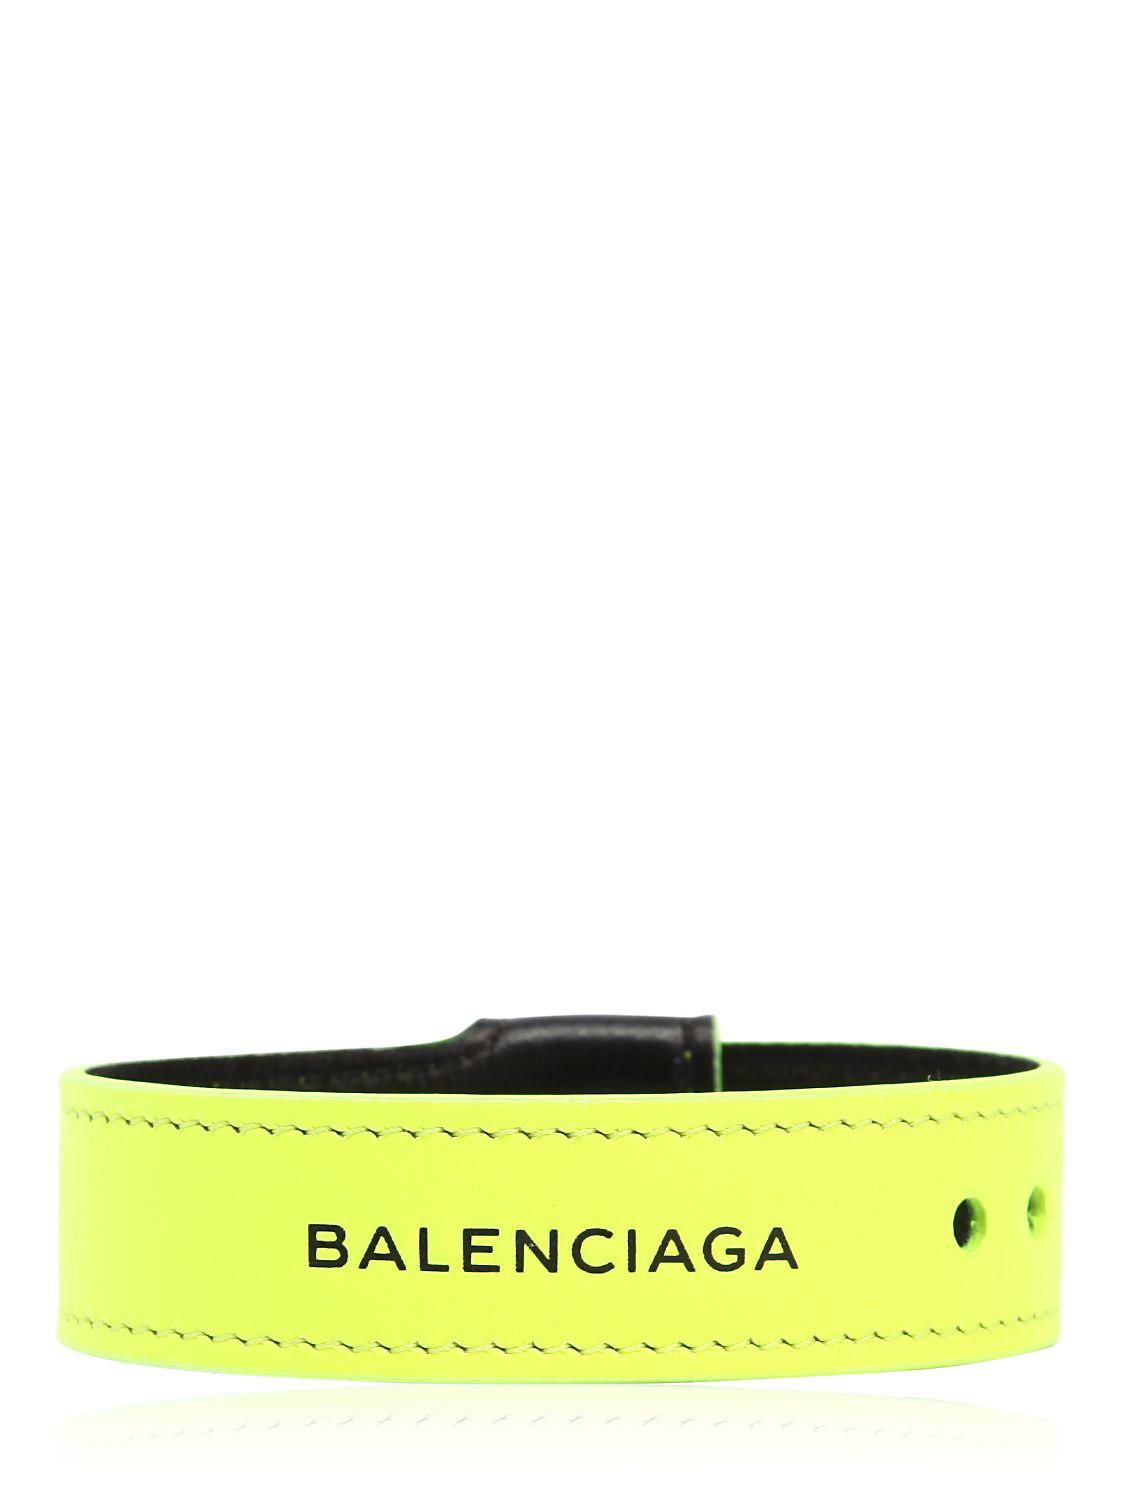 Браслет Баленсиага. Balenciaga браслет. Пластиковый браслет Balenciaga. Шнурок браслет Баленсиага.